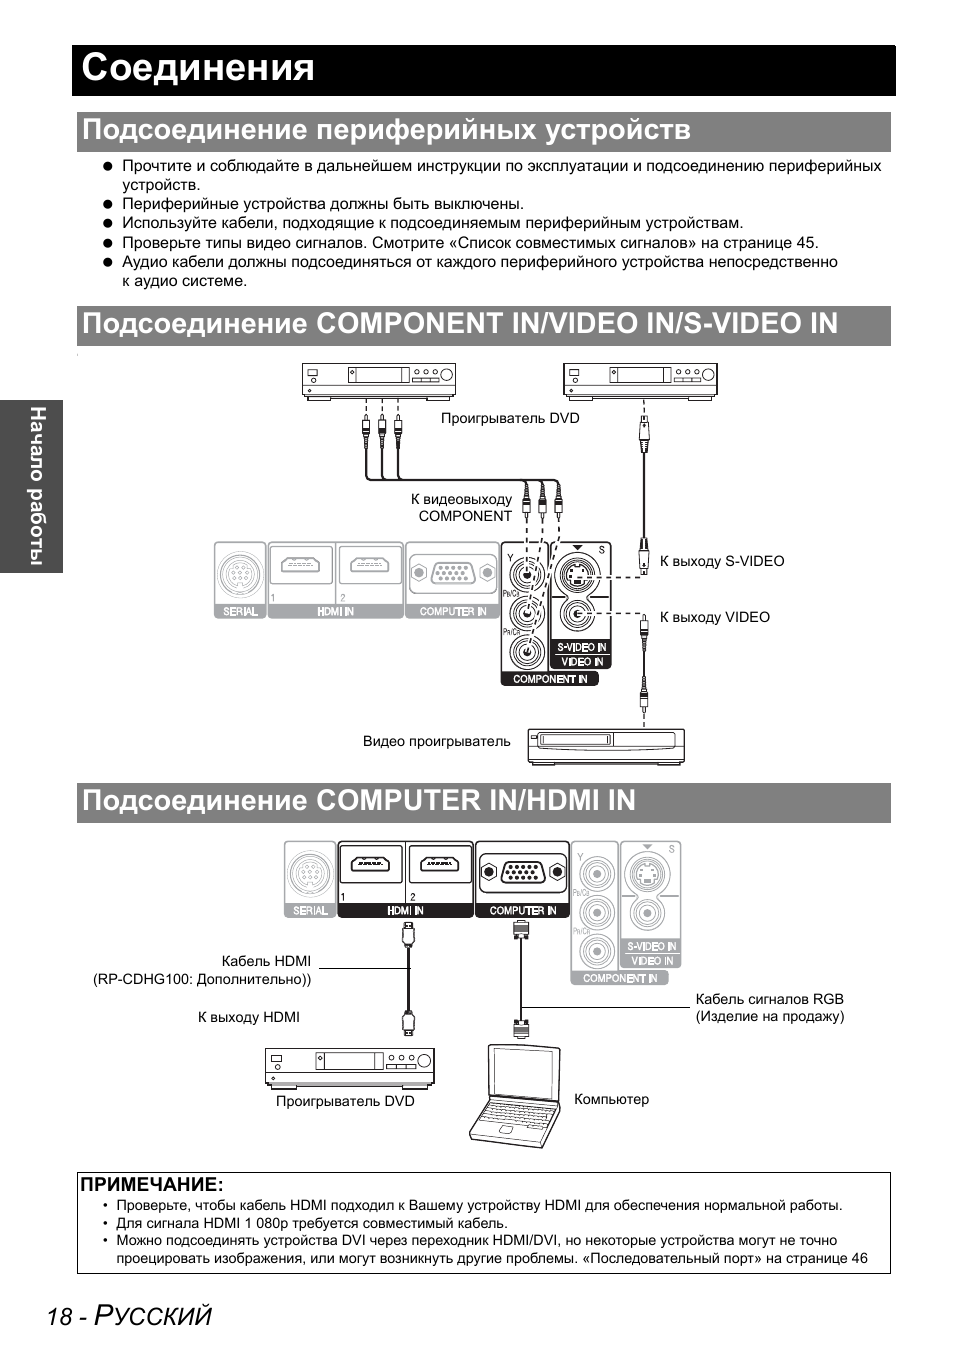 Panasonic Projector пульт инструкция. Подключение периферии. Инсталляция мультимедийного оборудования конструкция подключения. Rkb1 подключение.